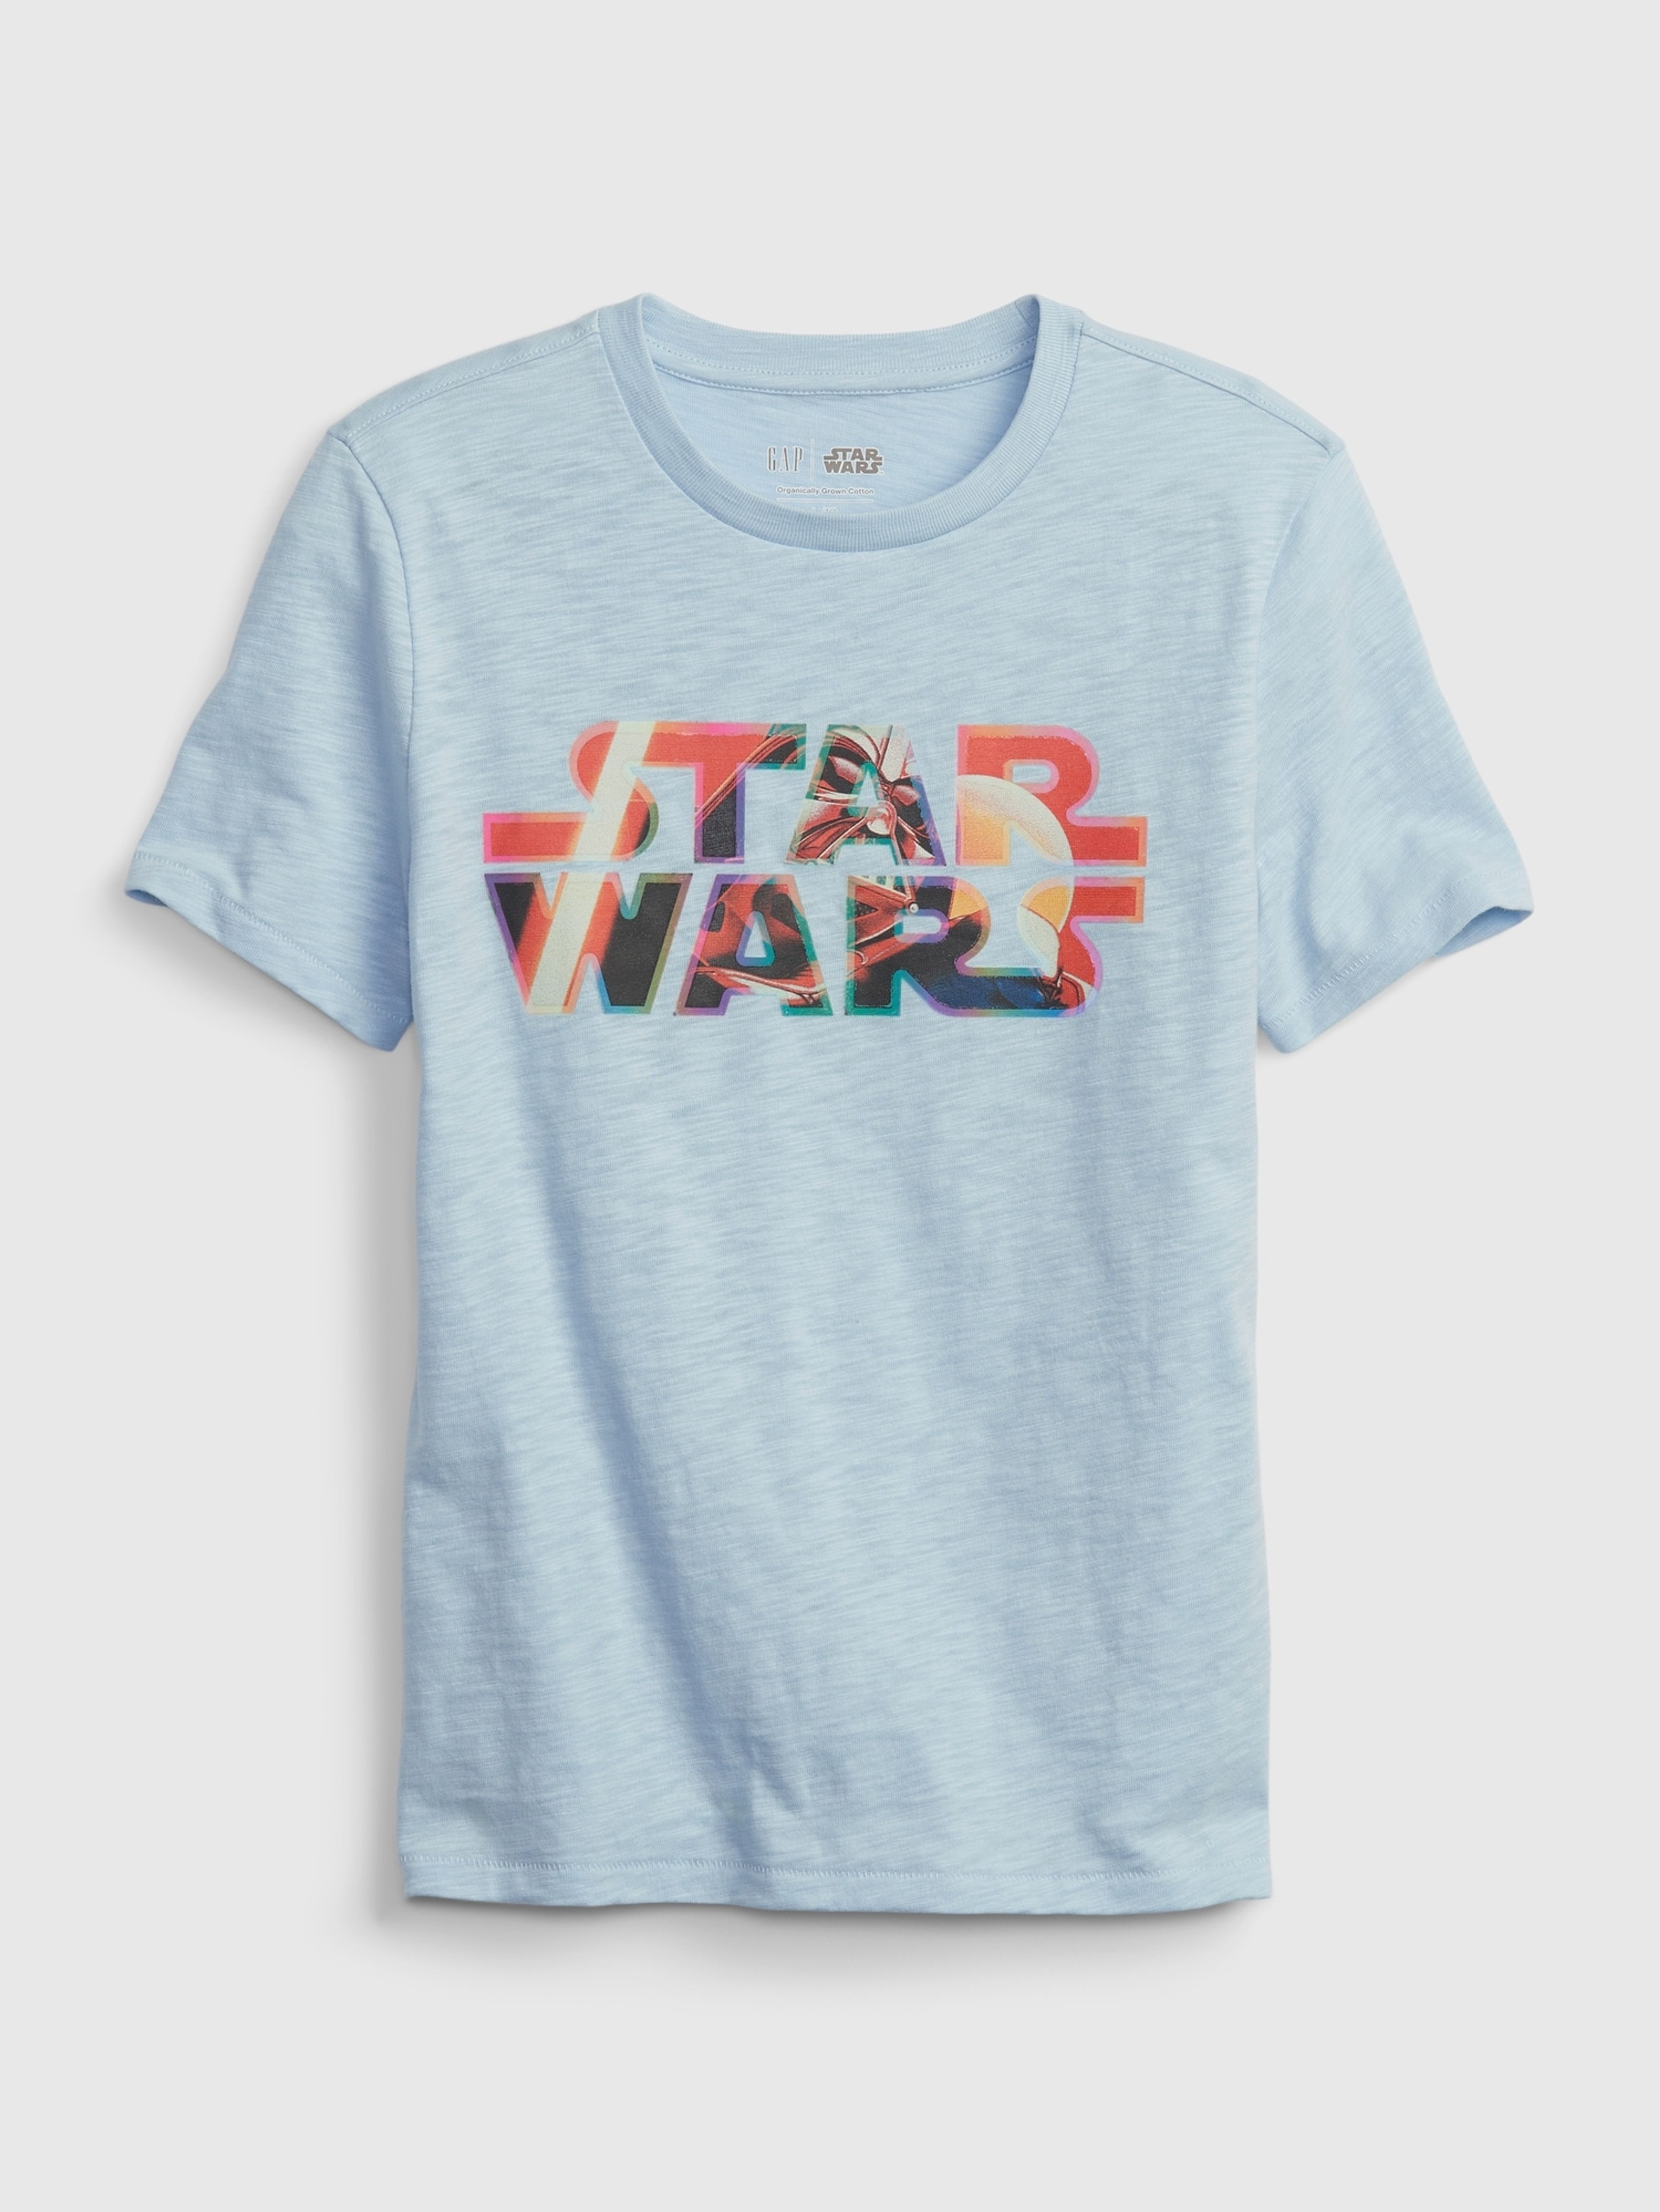 Detské tričko organic GAP & Star Wars